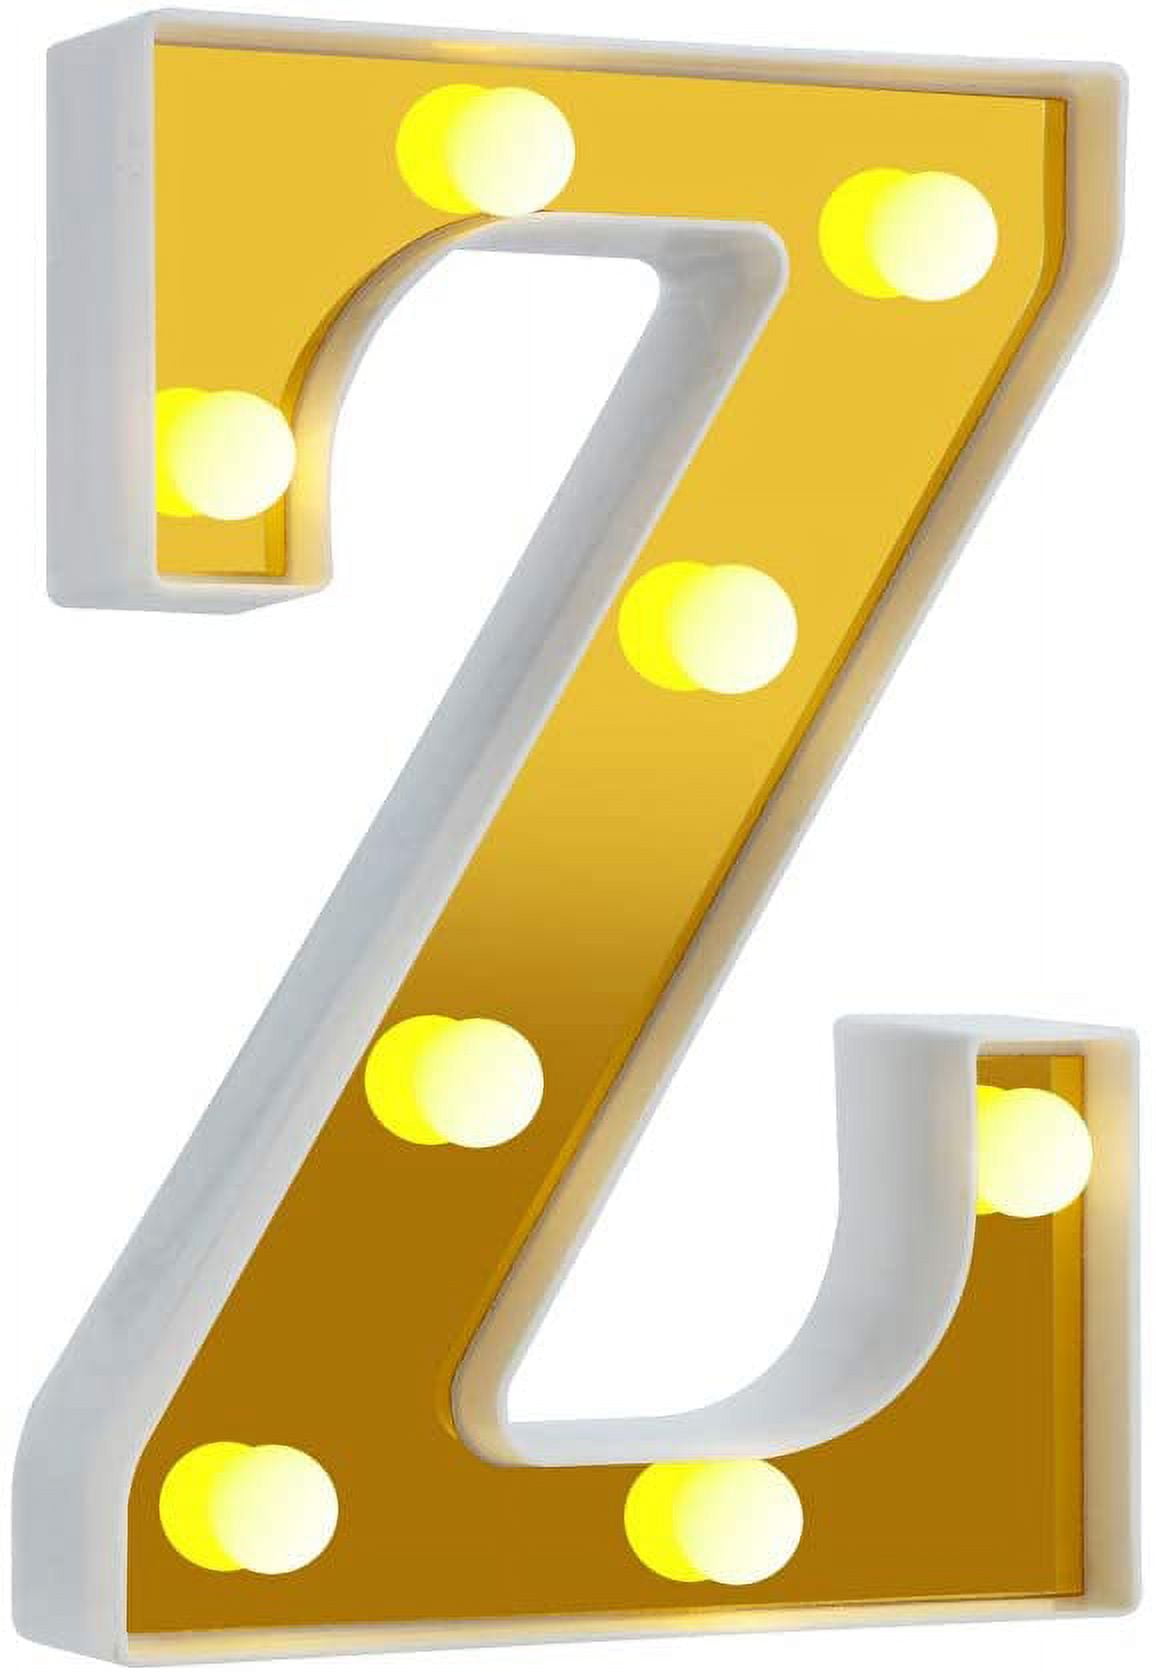 Yorulory LED Number Lights Sign Light Up Number Sign for Night